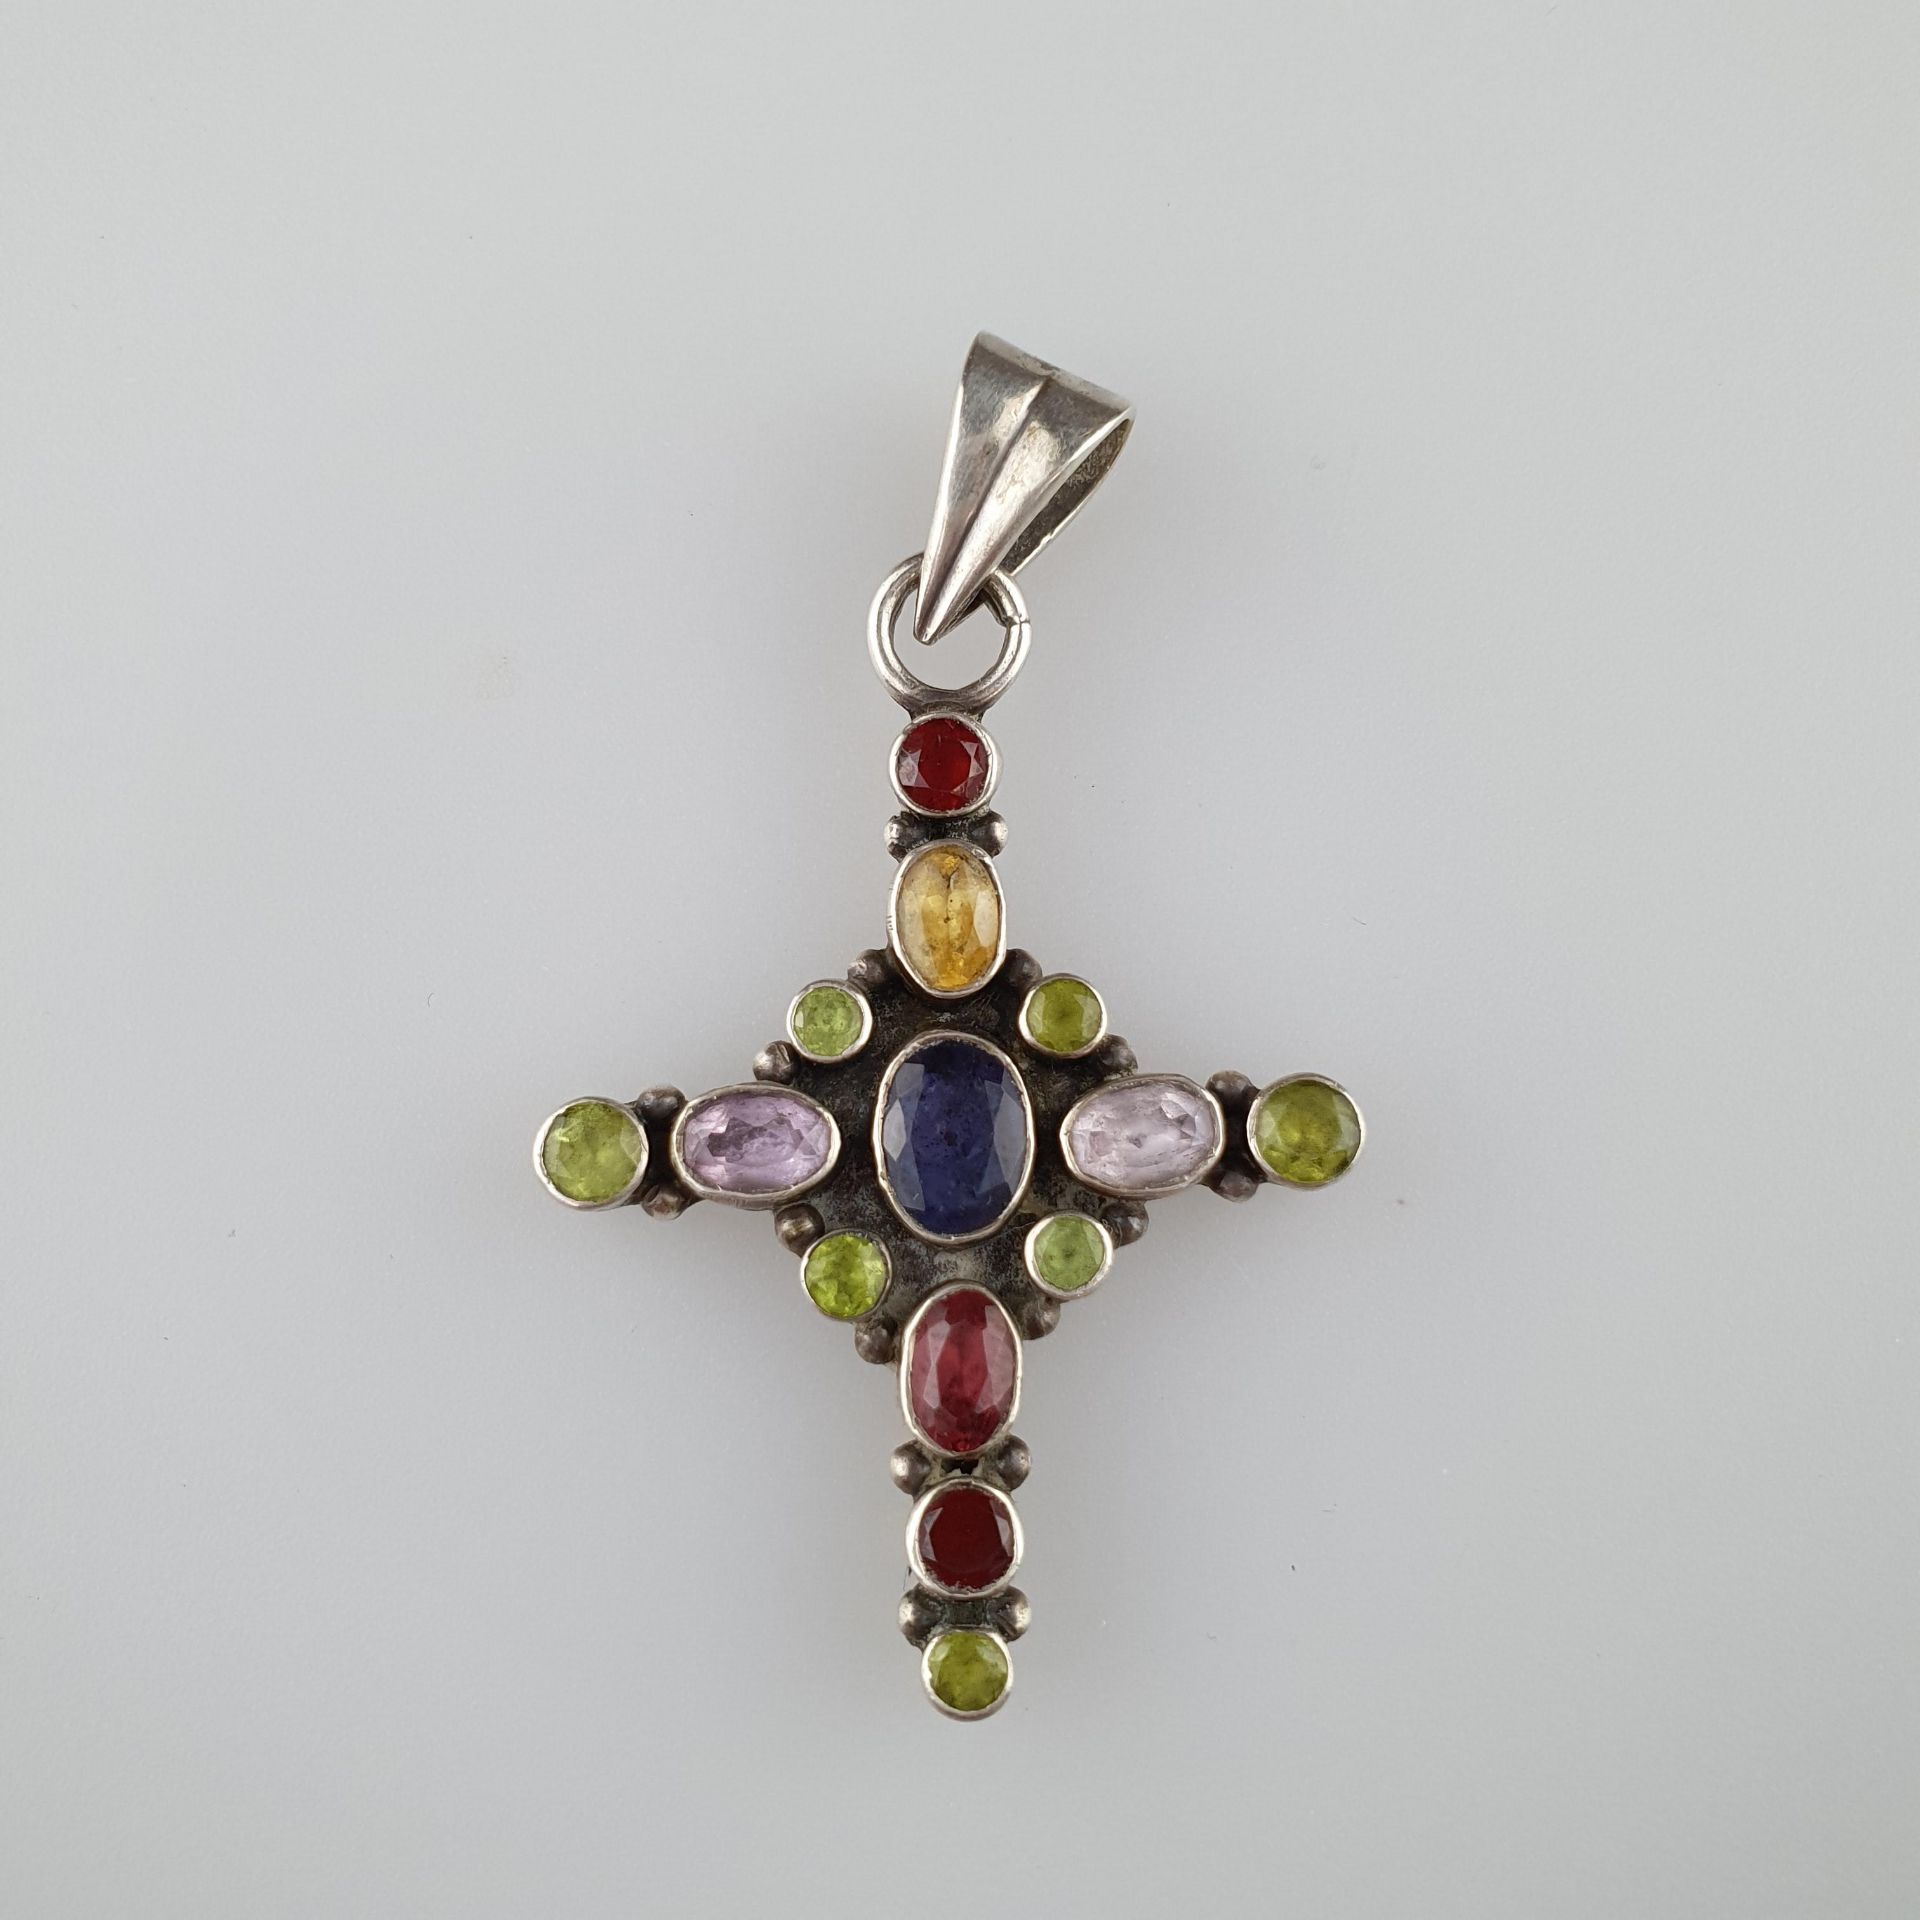 Multicolor-Schmuckset - bestehend aus Kreuzanhänger und Paar Ohrstecker, Silber, "925" gestempelt, - Bild 3 aus 4